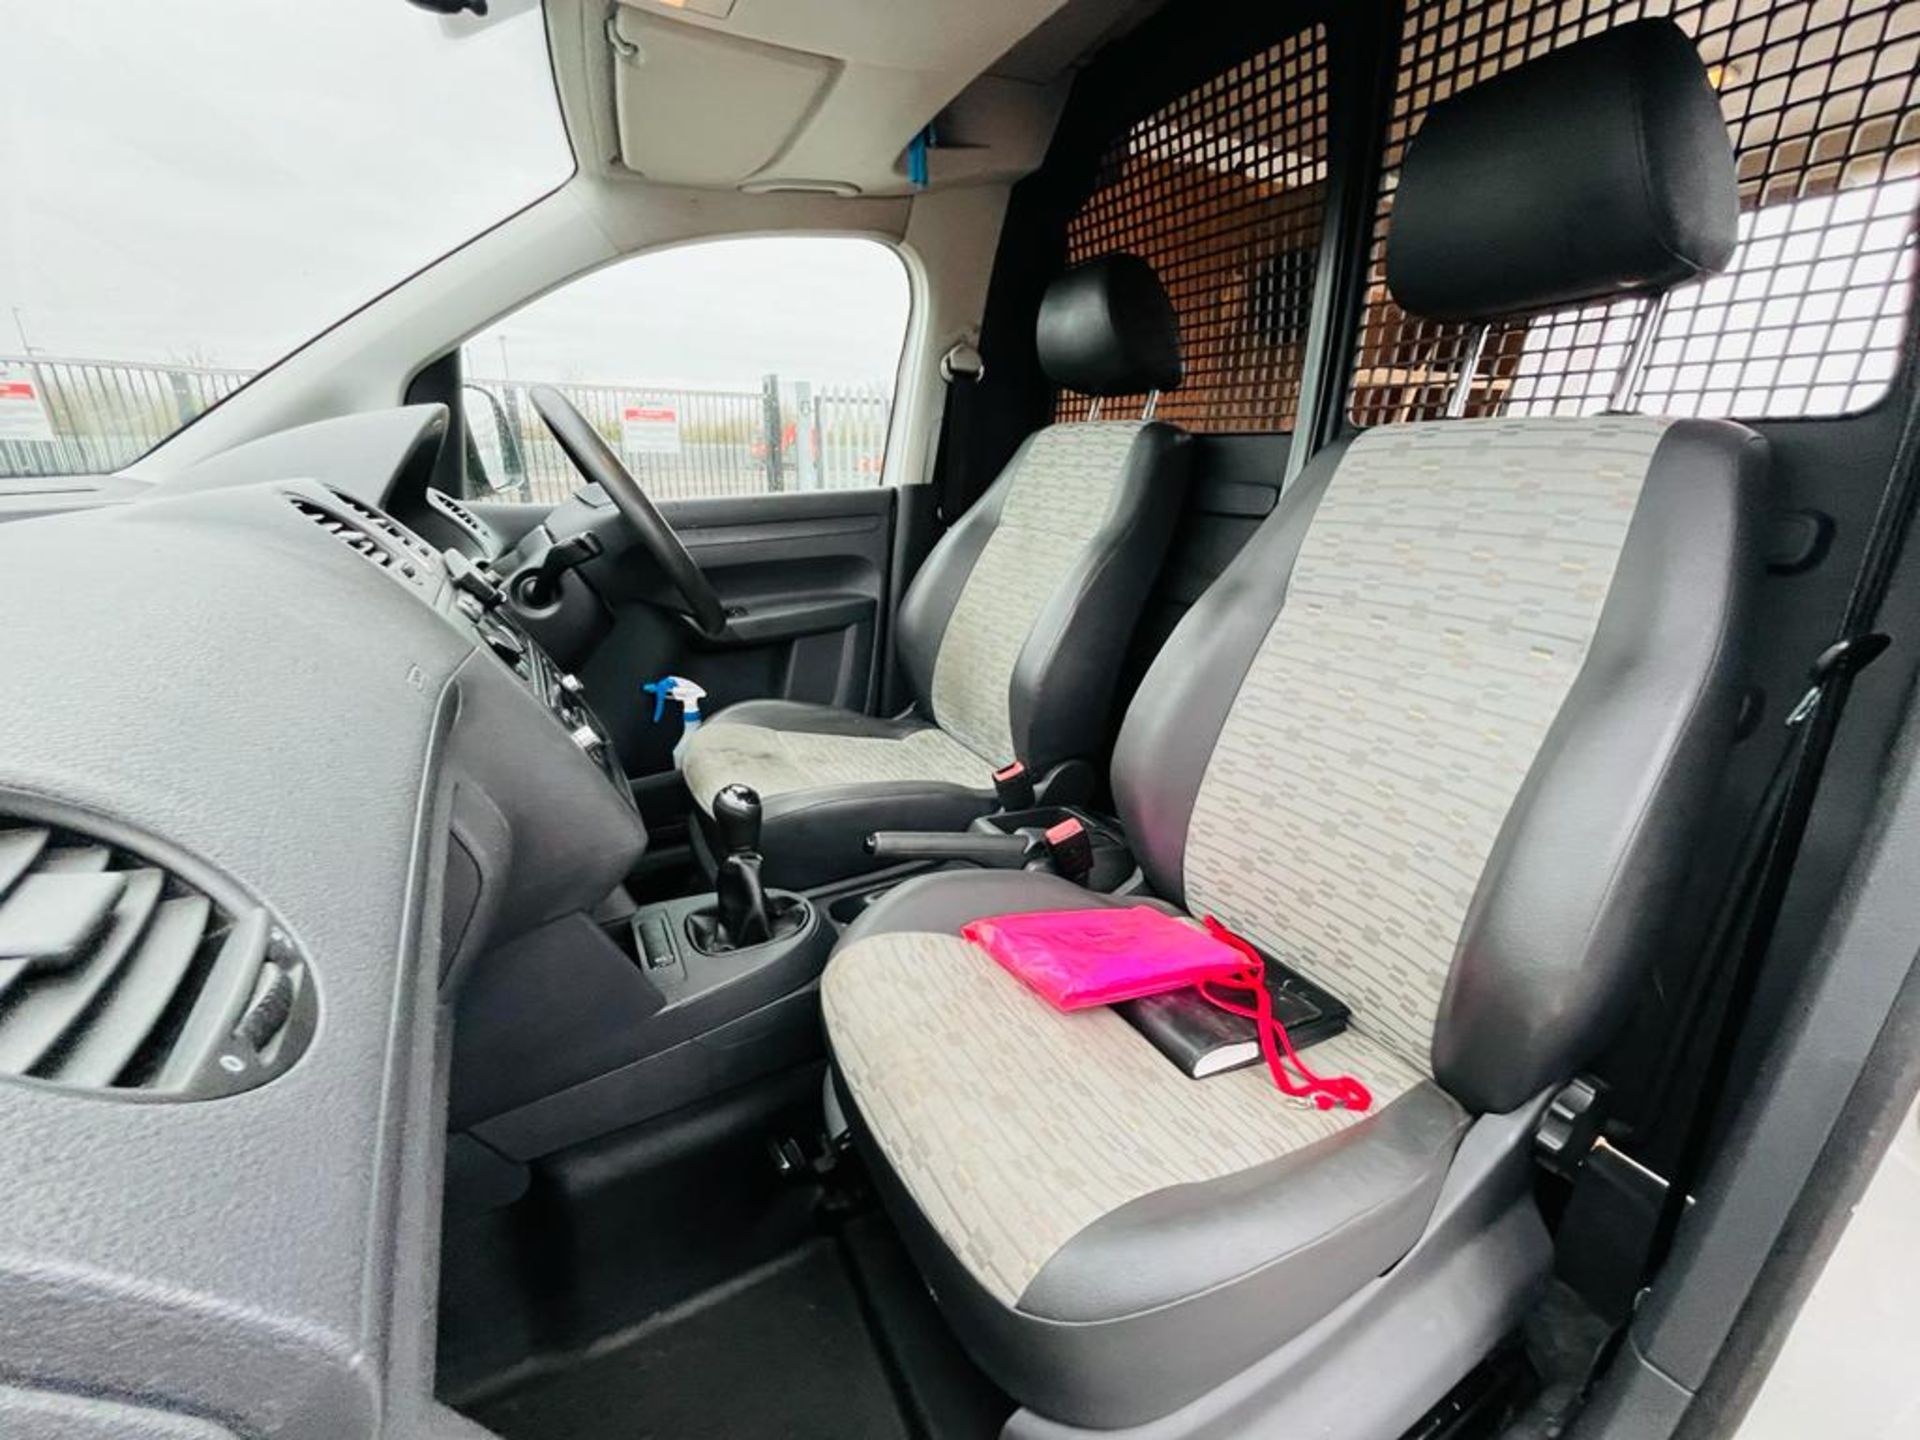 Volkswagen Caddy C20 1.6 TDI 102 2013 '13 Reg' - Panel Van - No Vat - Bild 24 aus 28